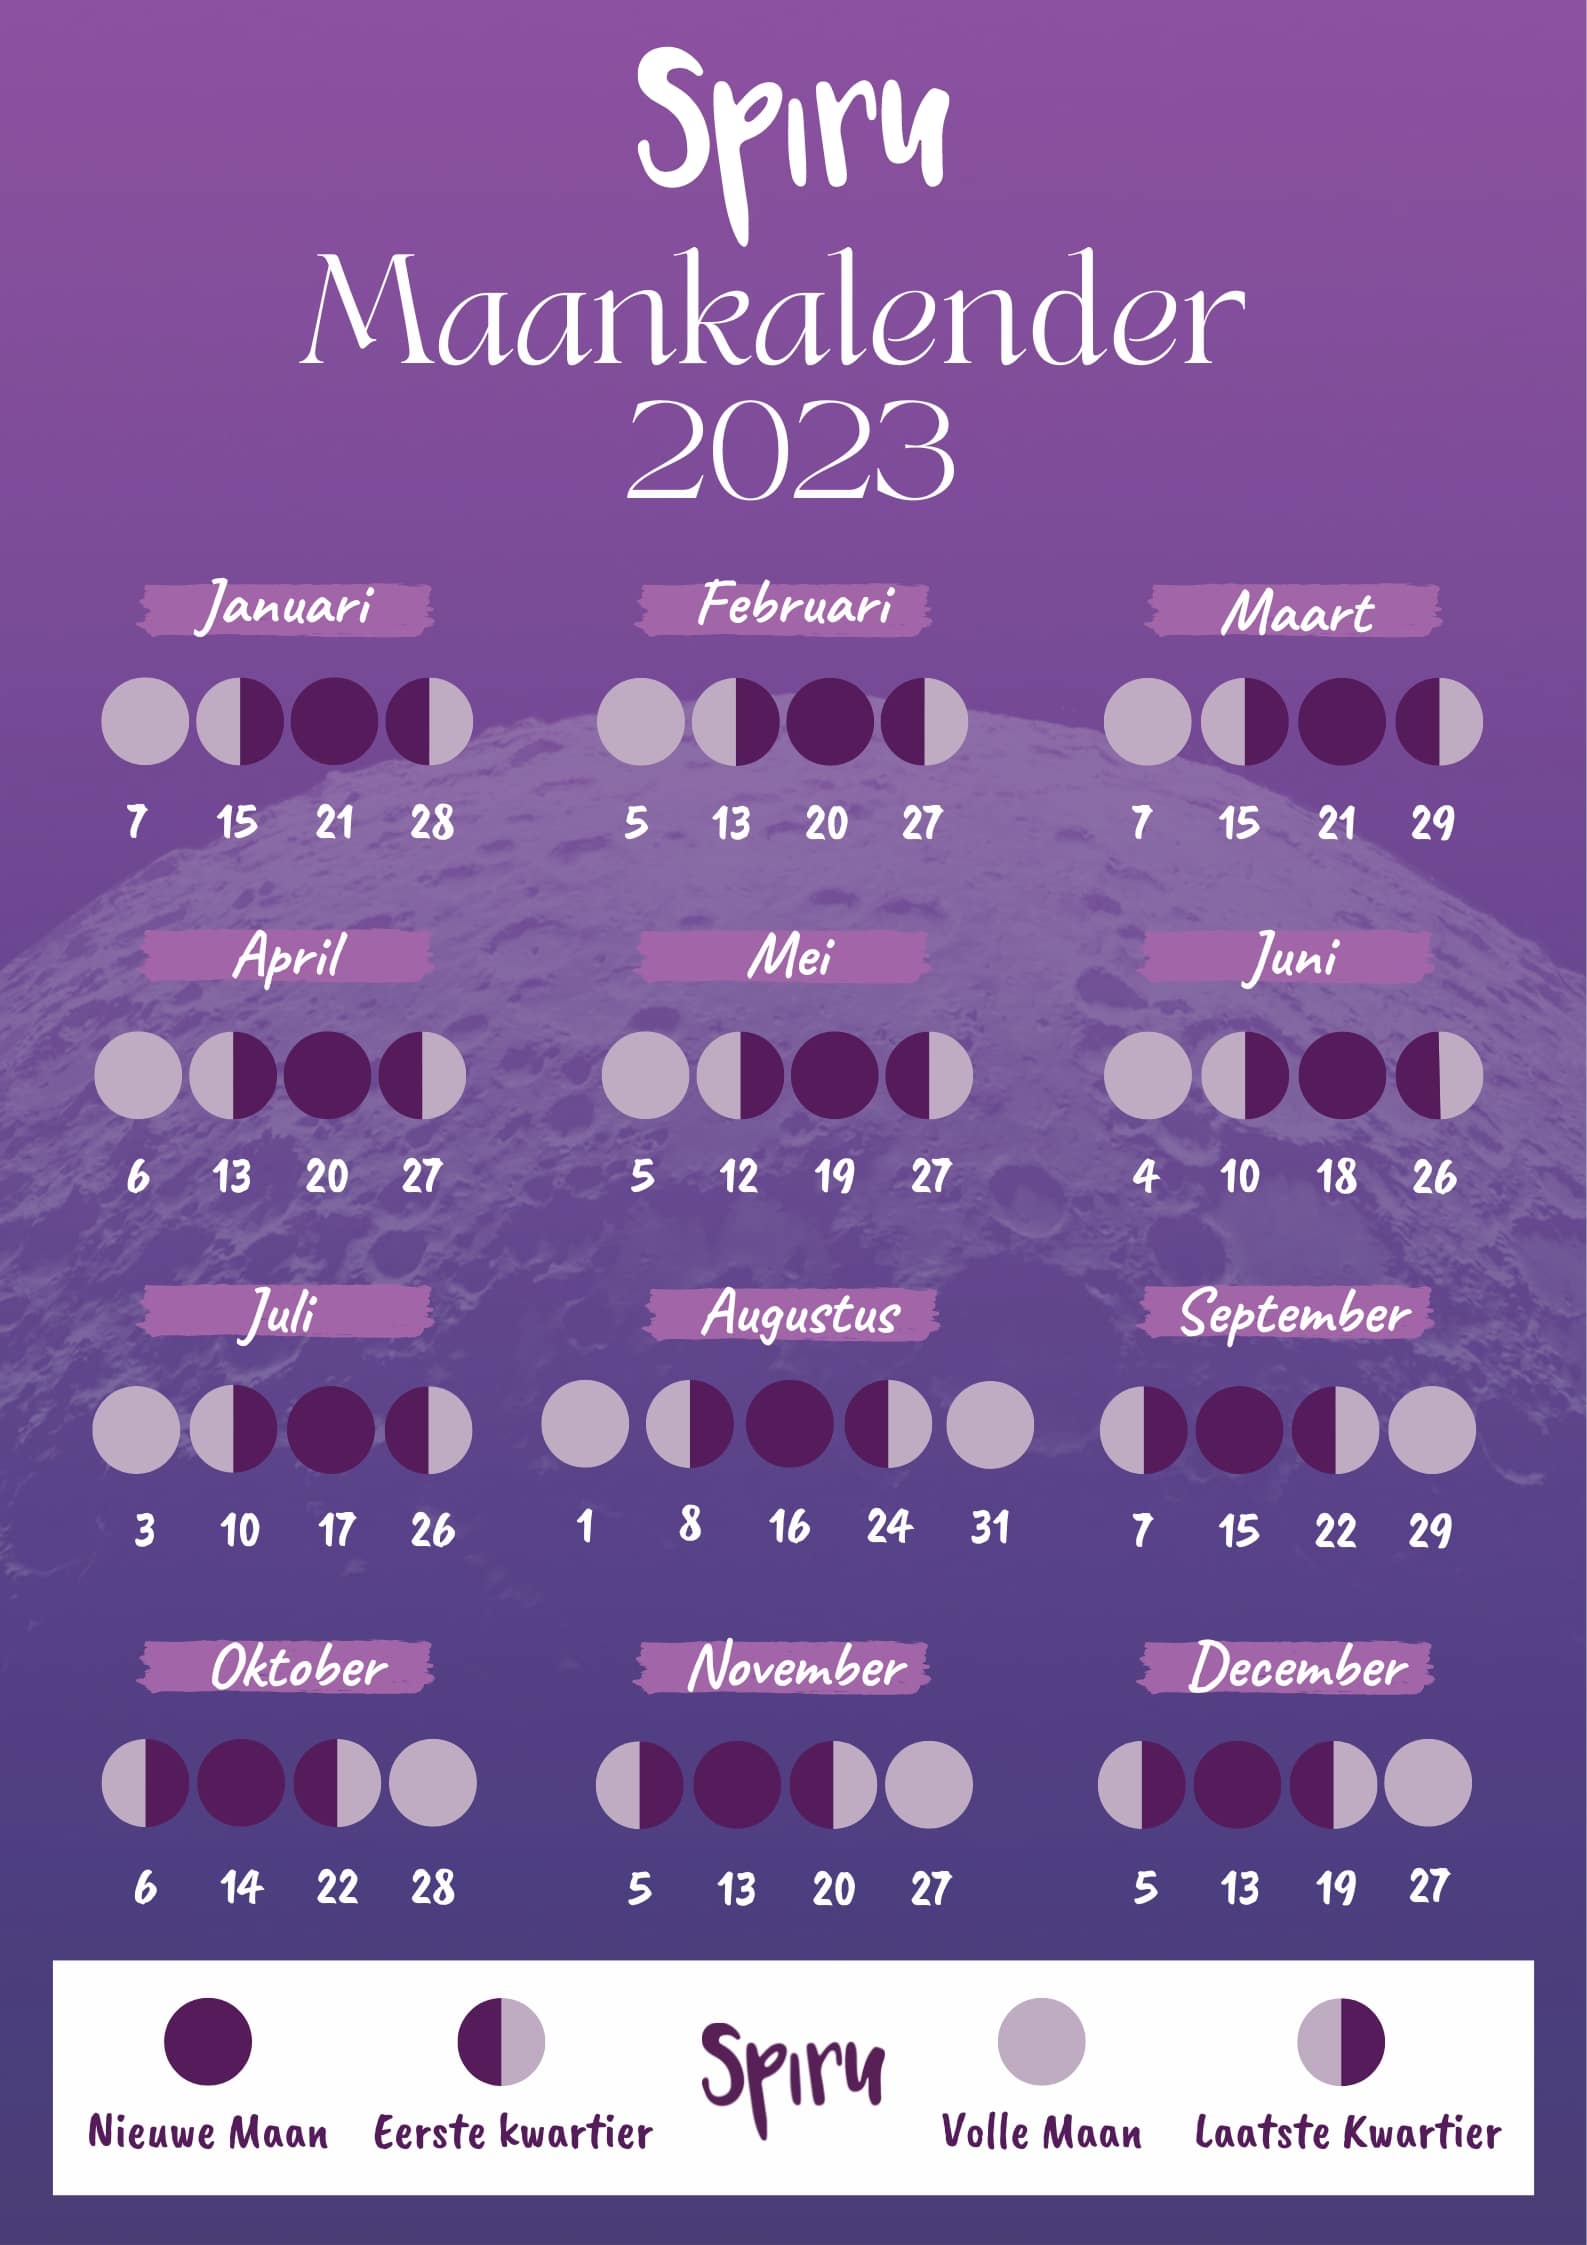 Maankalender 2023 Spiru